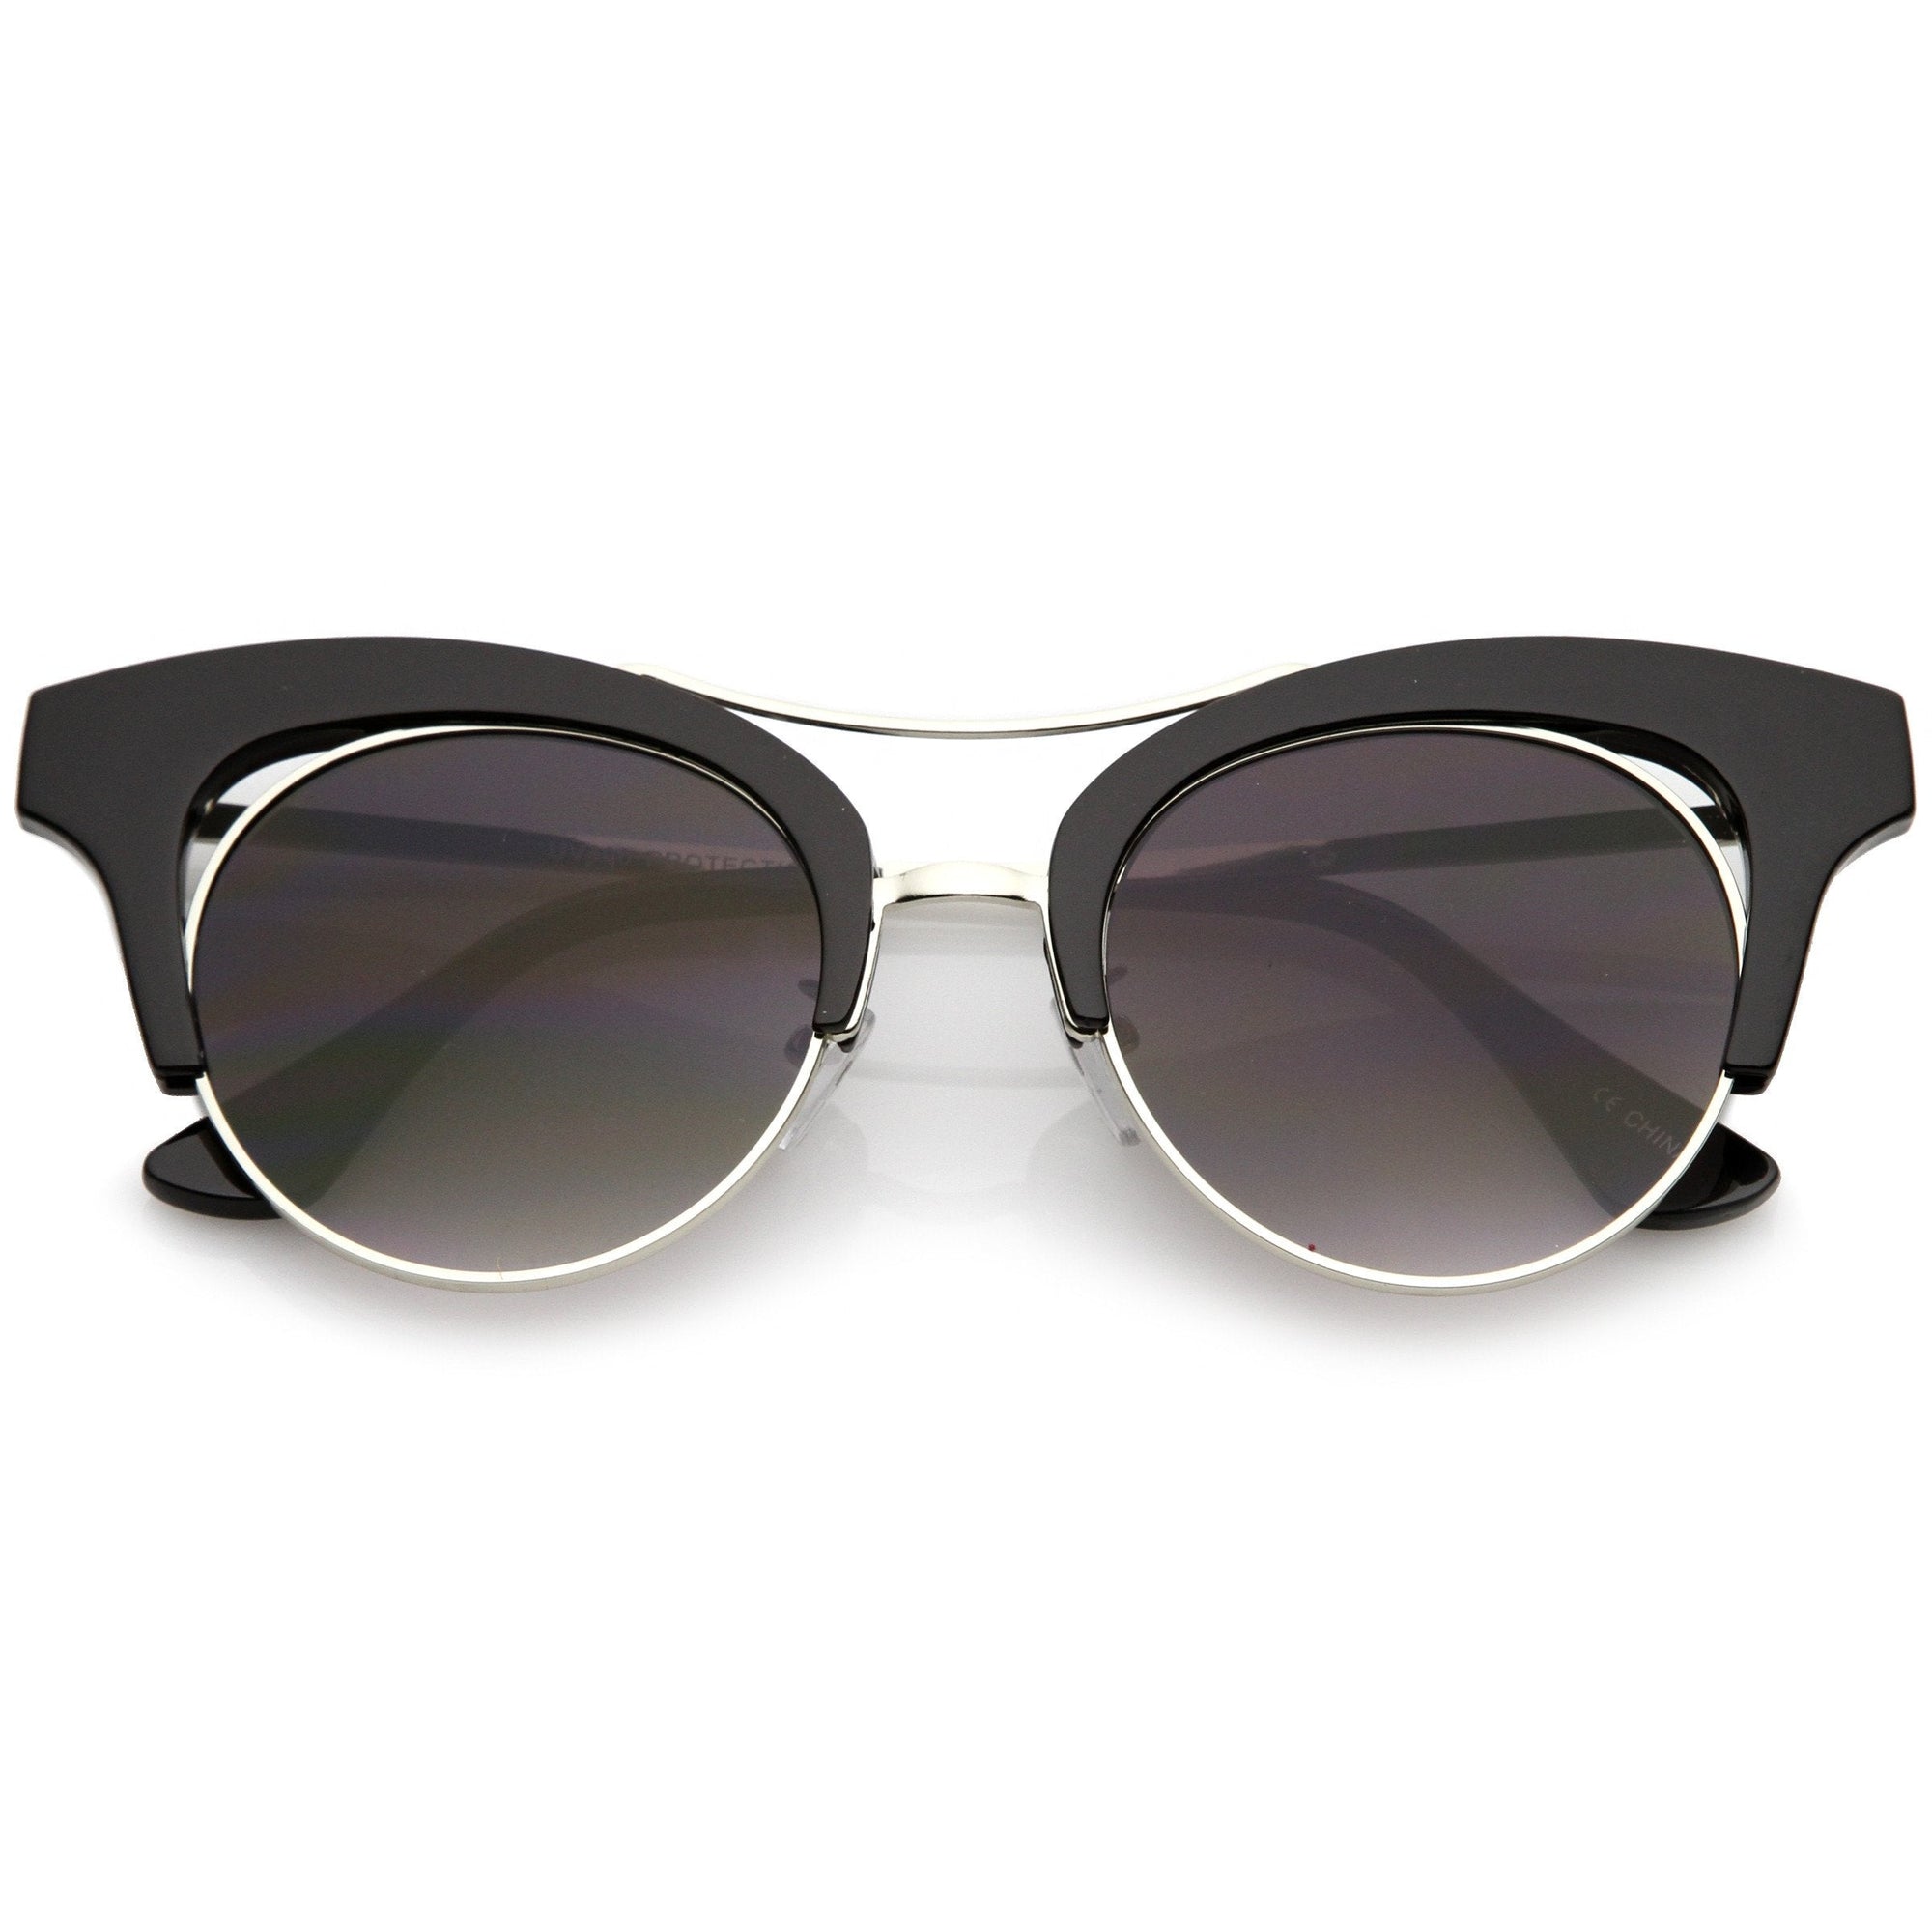 Gafas de sol estilo ojo de gato con forma de lágrima inspiradas en los años 50 para mujer A874